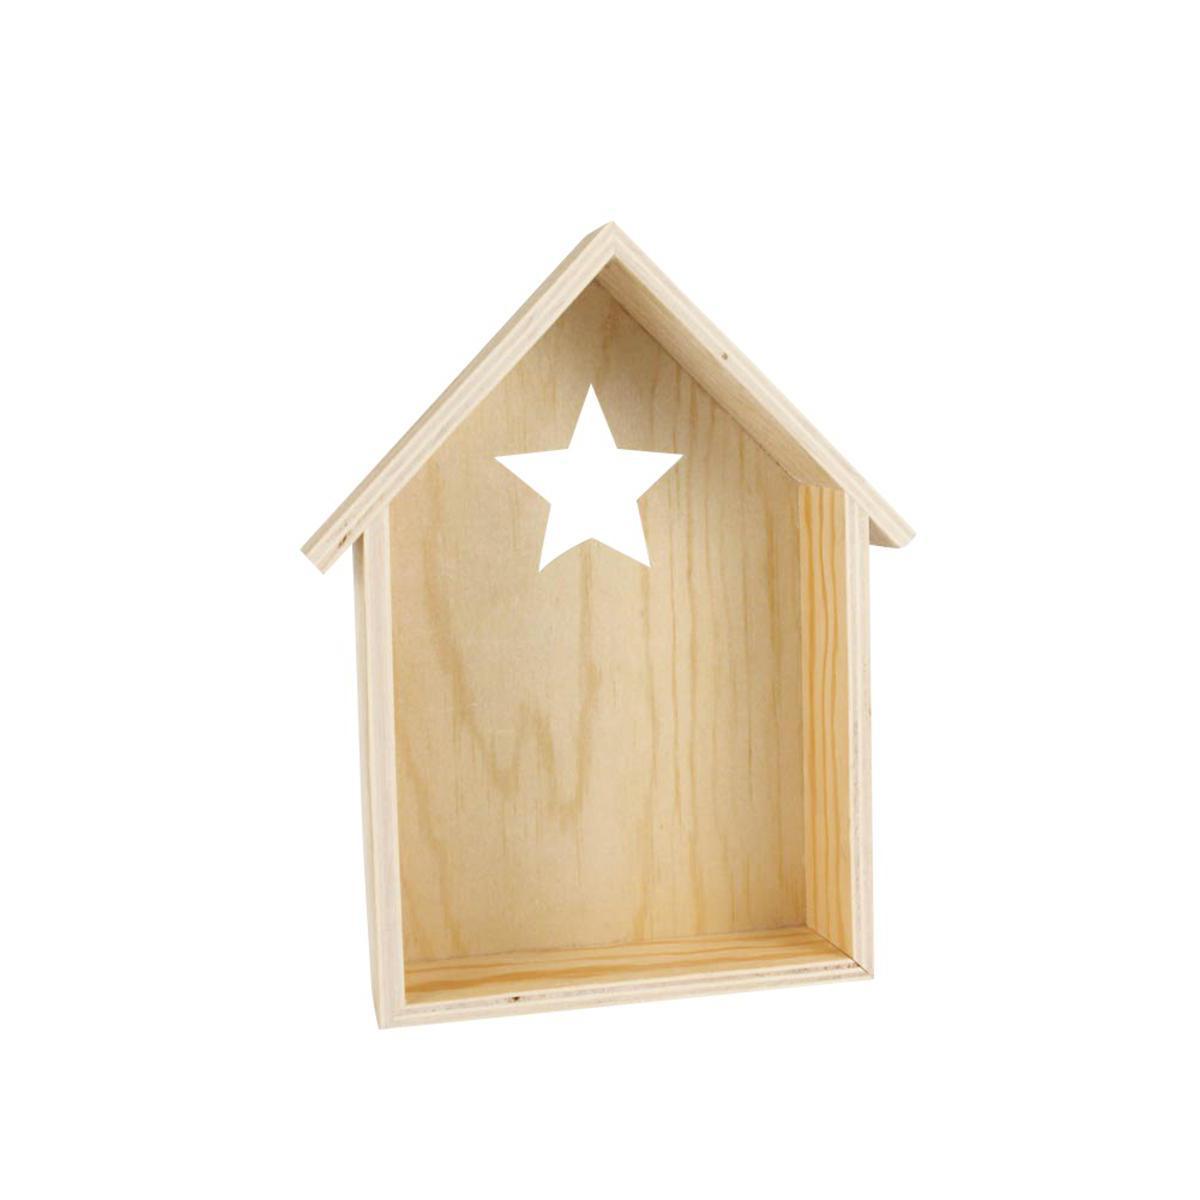 Etagère forme maison découpe étoile - Bois - 25 x 19,5 x 7 cm - Beige